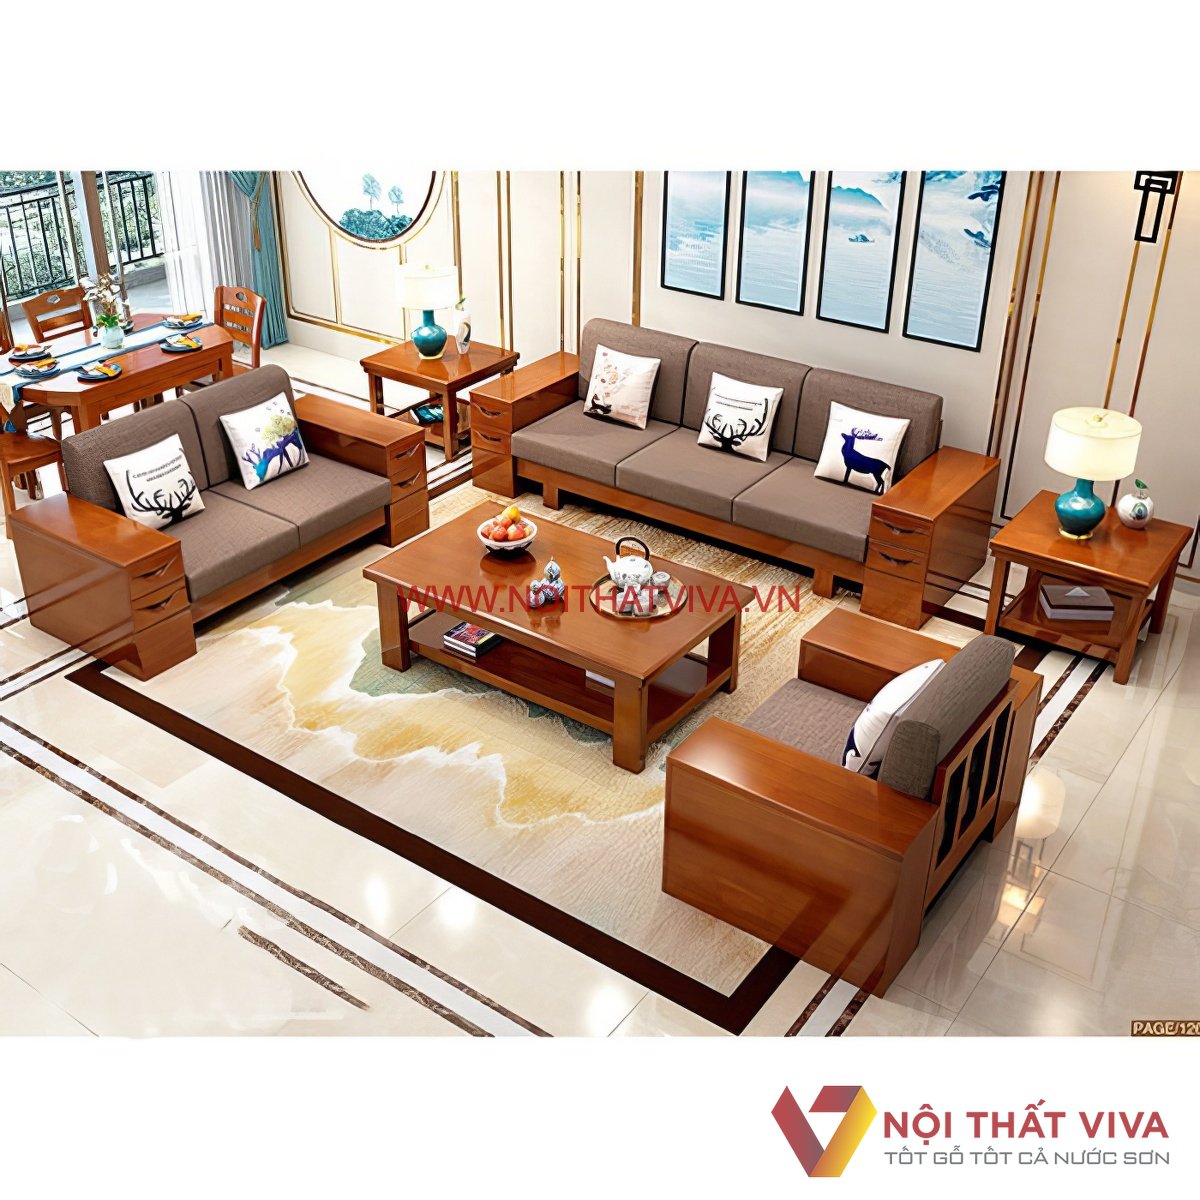 Mẫu ghế sofa gỗ hiện đại cho phòng khách V3-6301 | Nội Thất Việt Ba